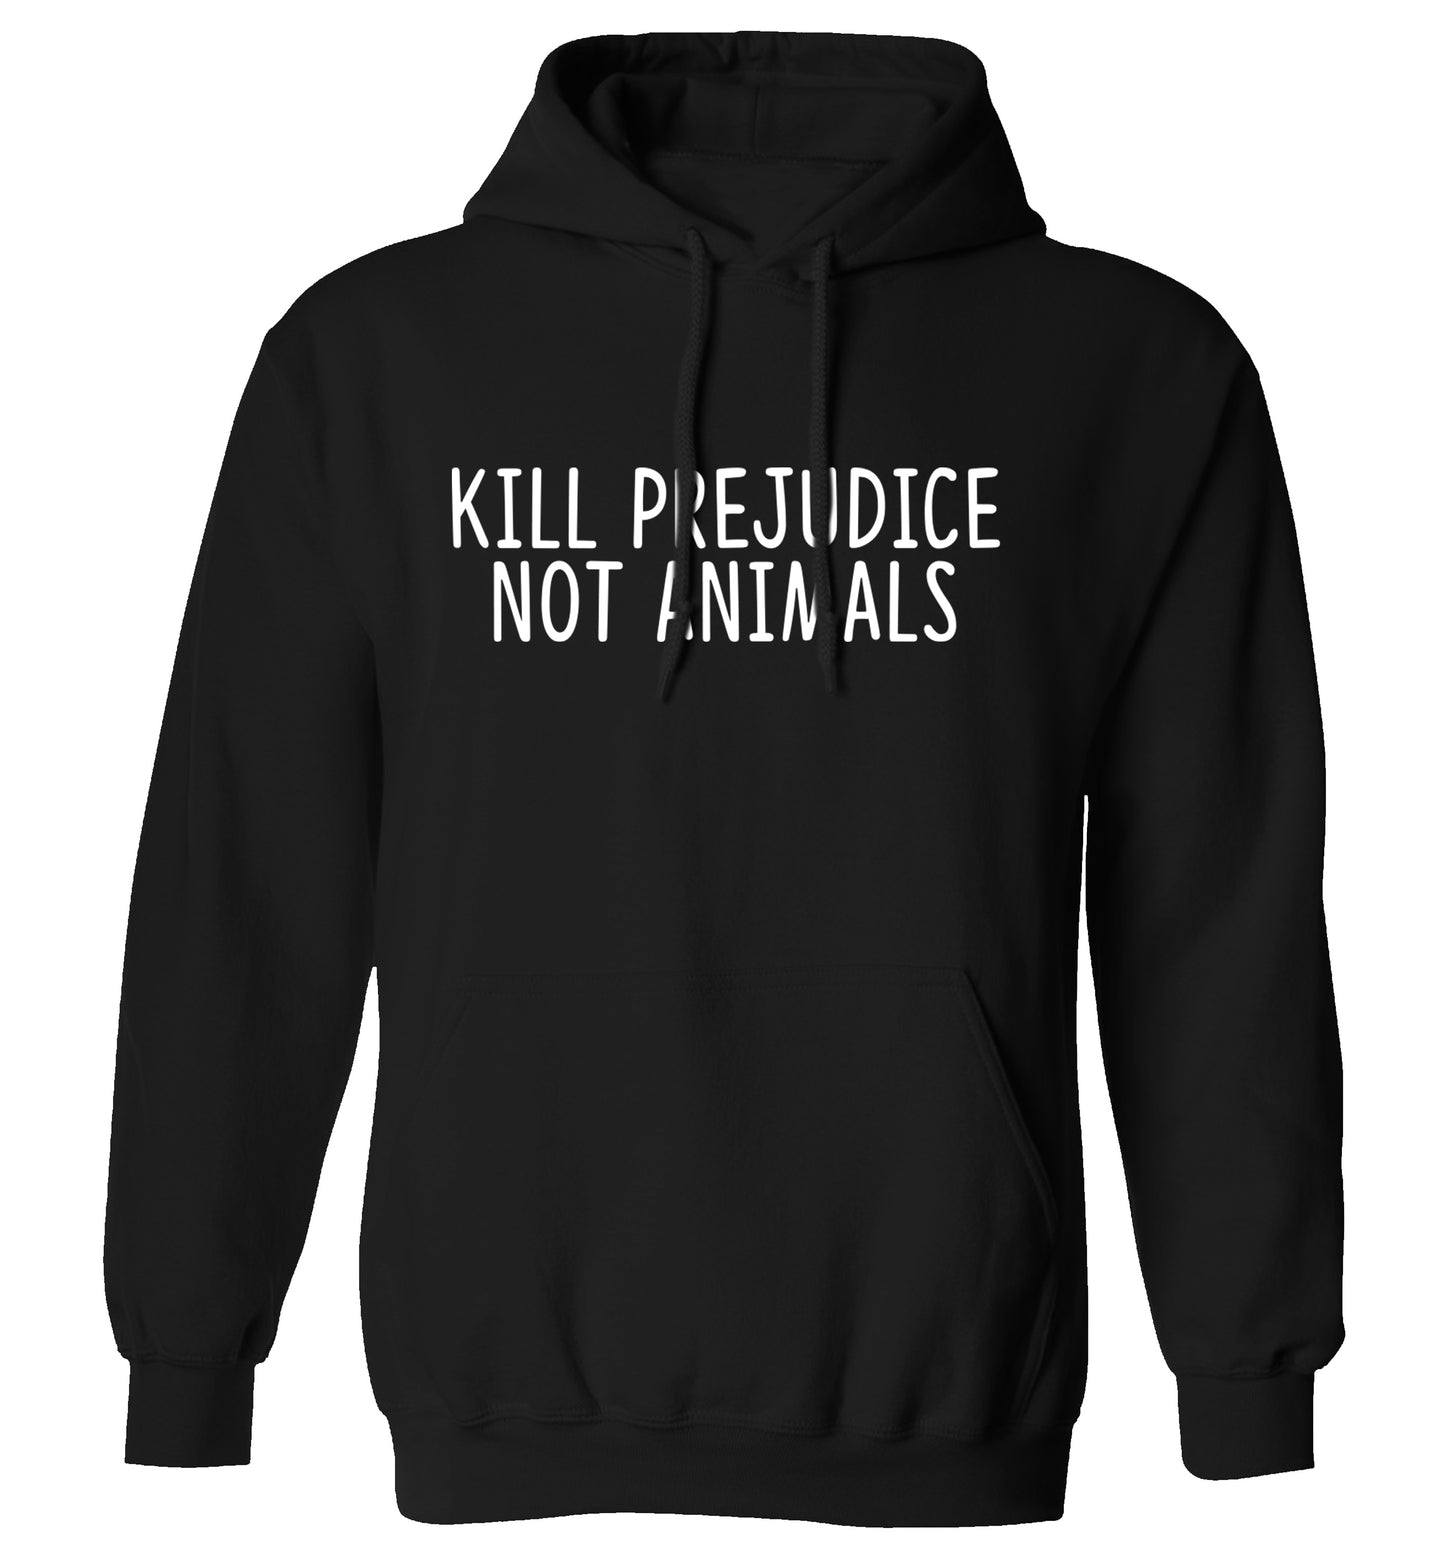 Kill Prejudice Not Animals adults unisex black hoodie 2XL